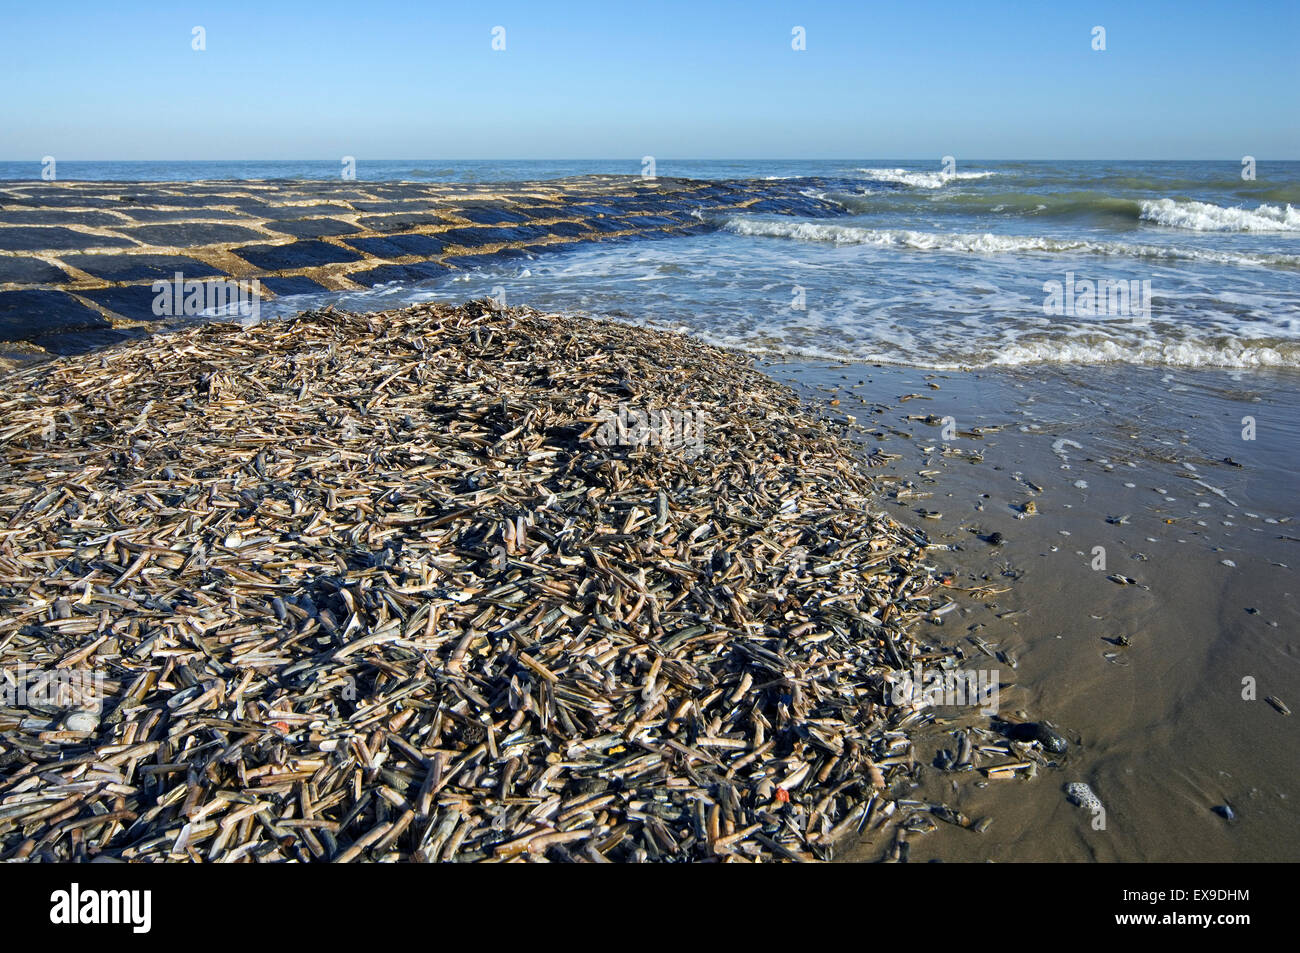 Masse des Atlantic Taschenmesser / American Klappmesser Muscheln / Razor clam (Ensis Directus / Ensis Americanus) Muscheln an Strand gespült Stockfoto